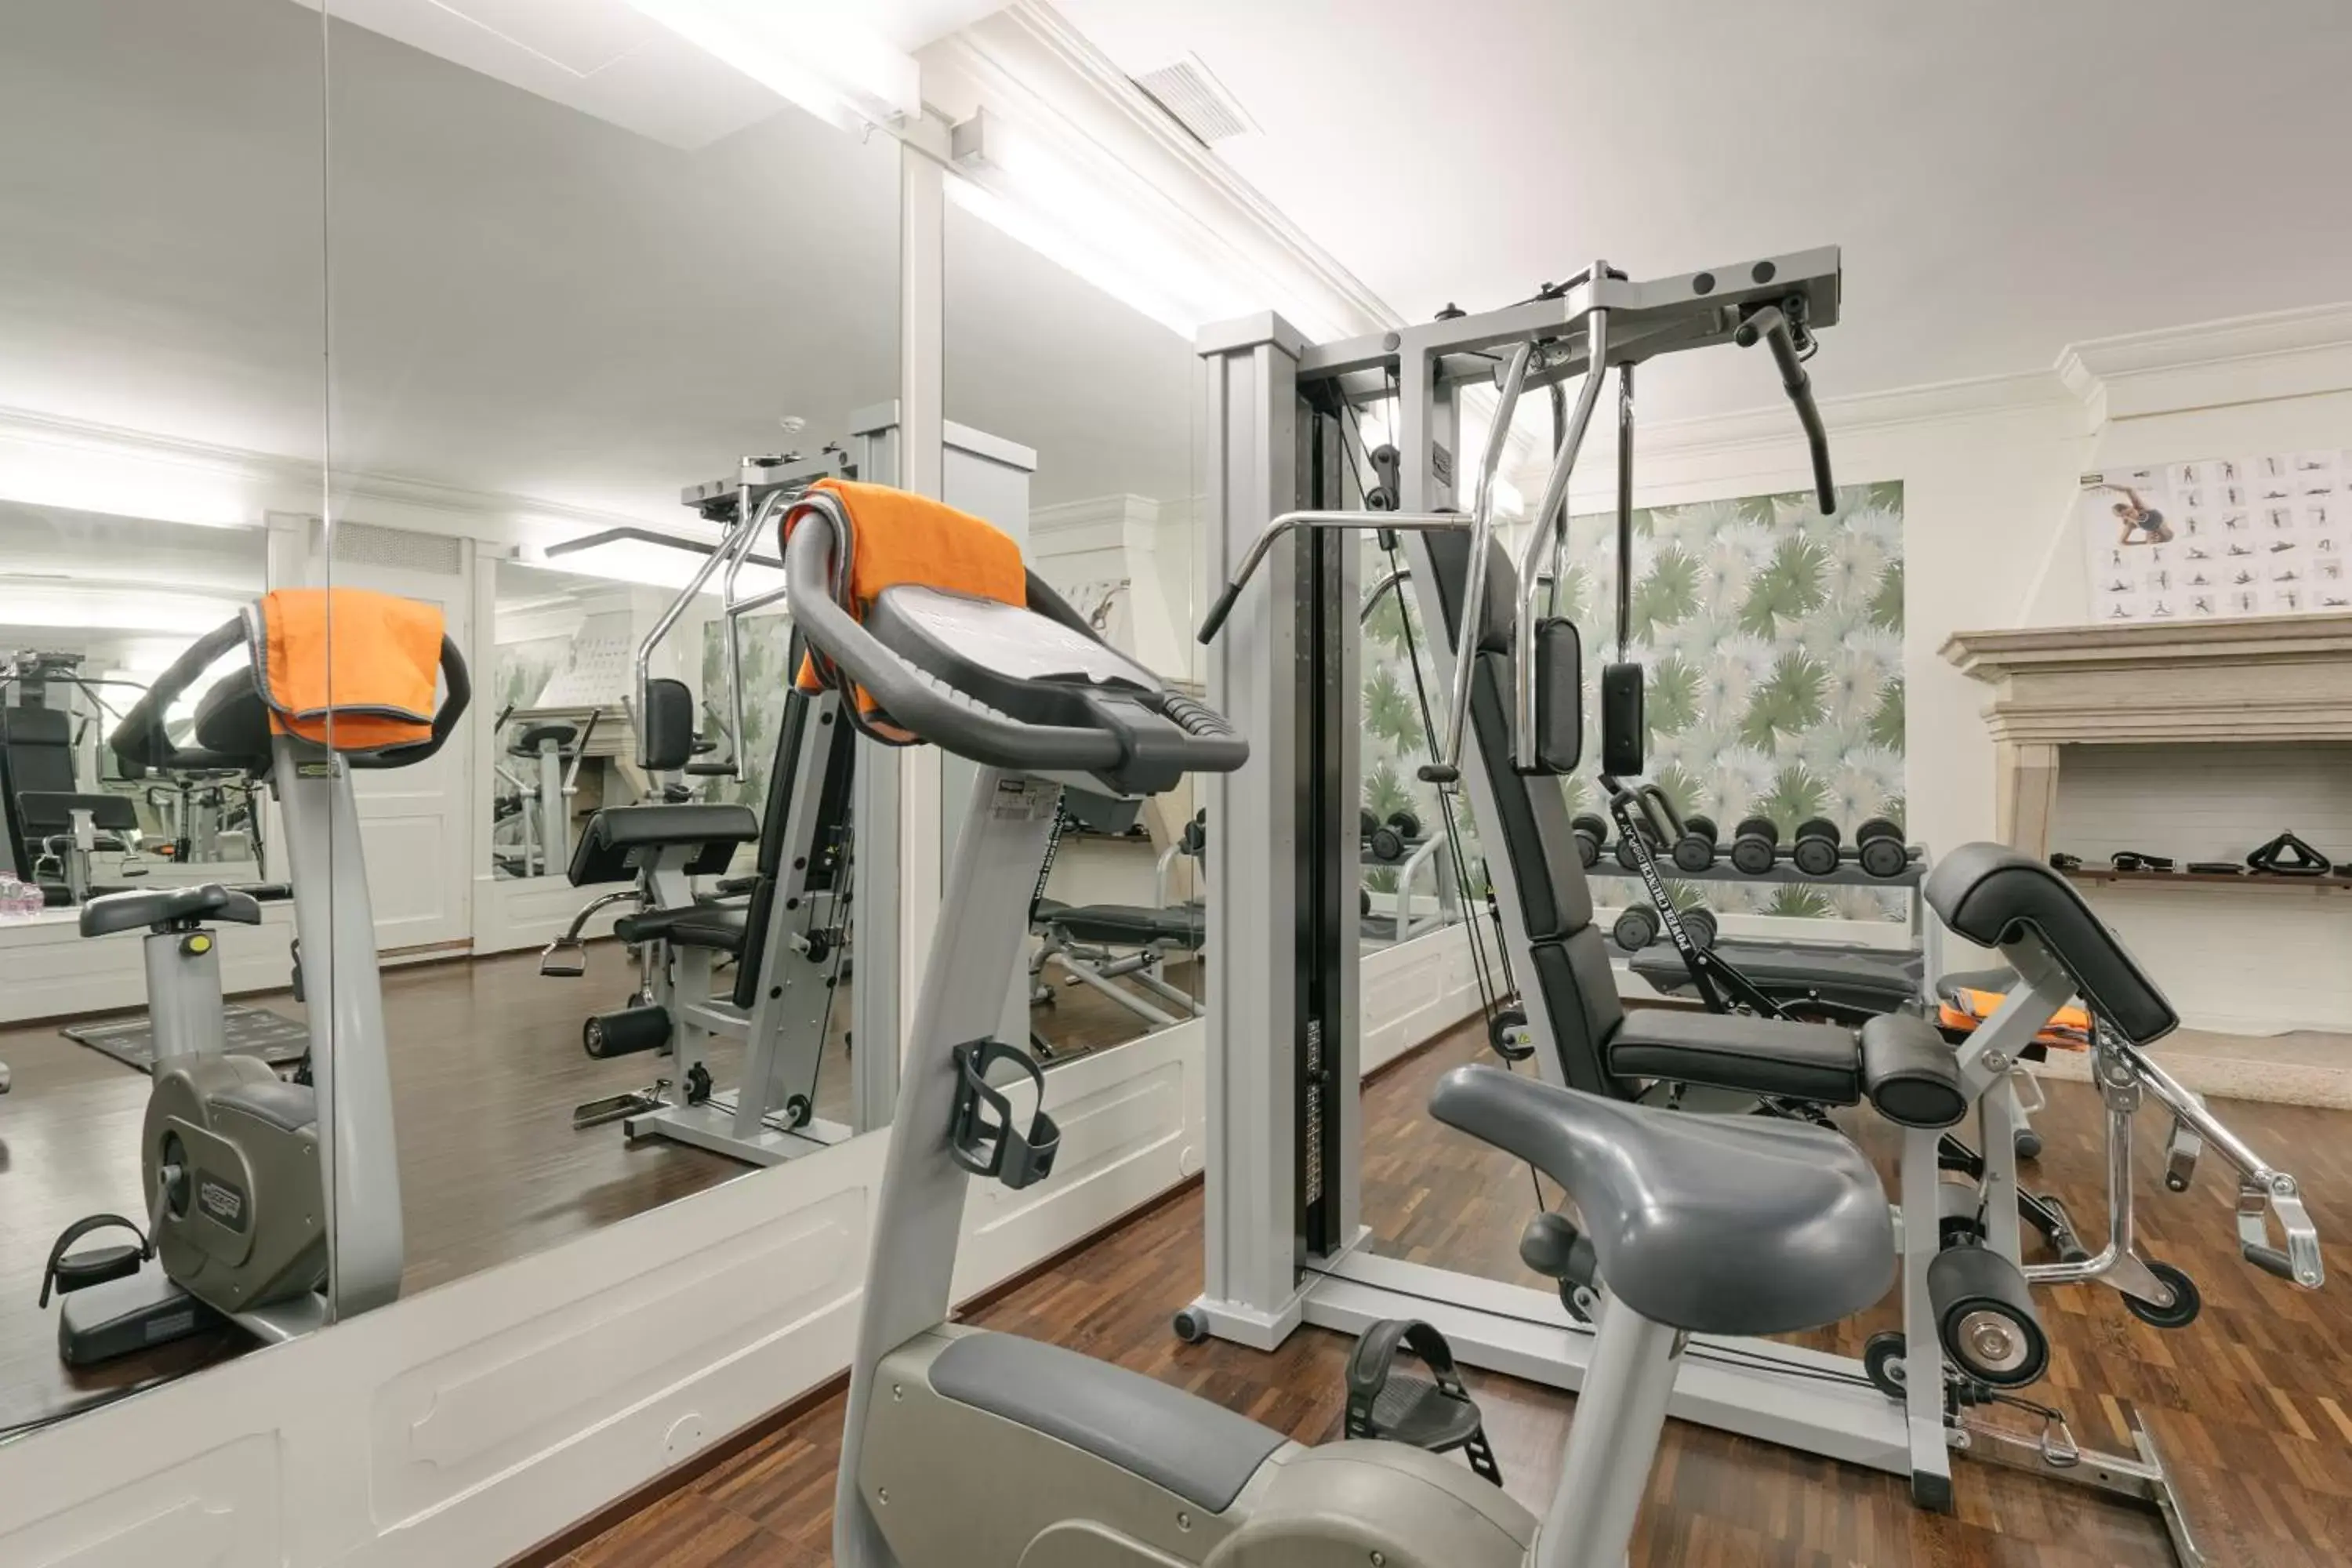 Fitness centre/facilities, Fitness Center/Facilities in Hotel Giulietta e Romeo ***S